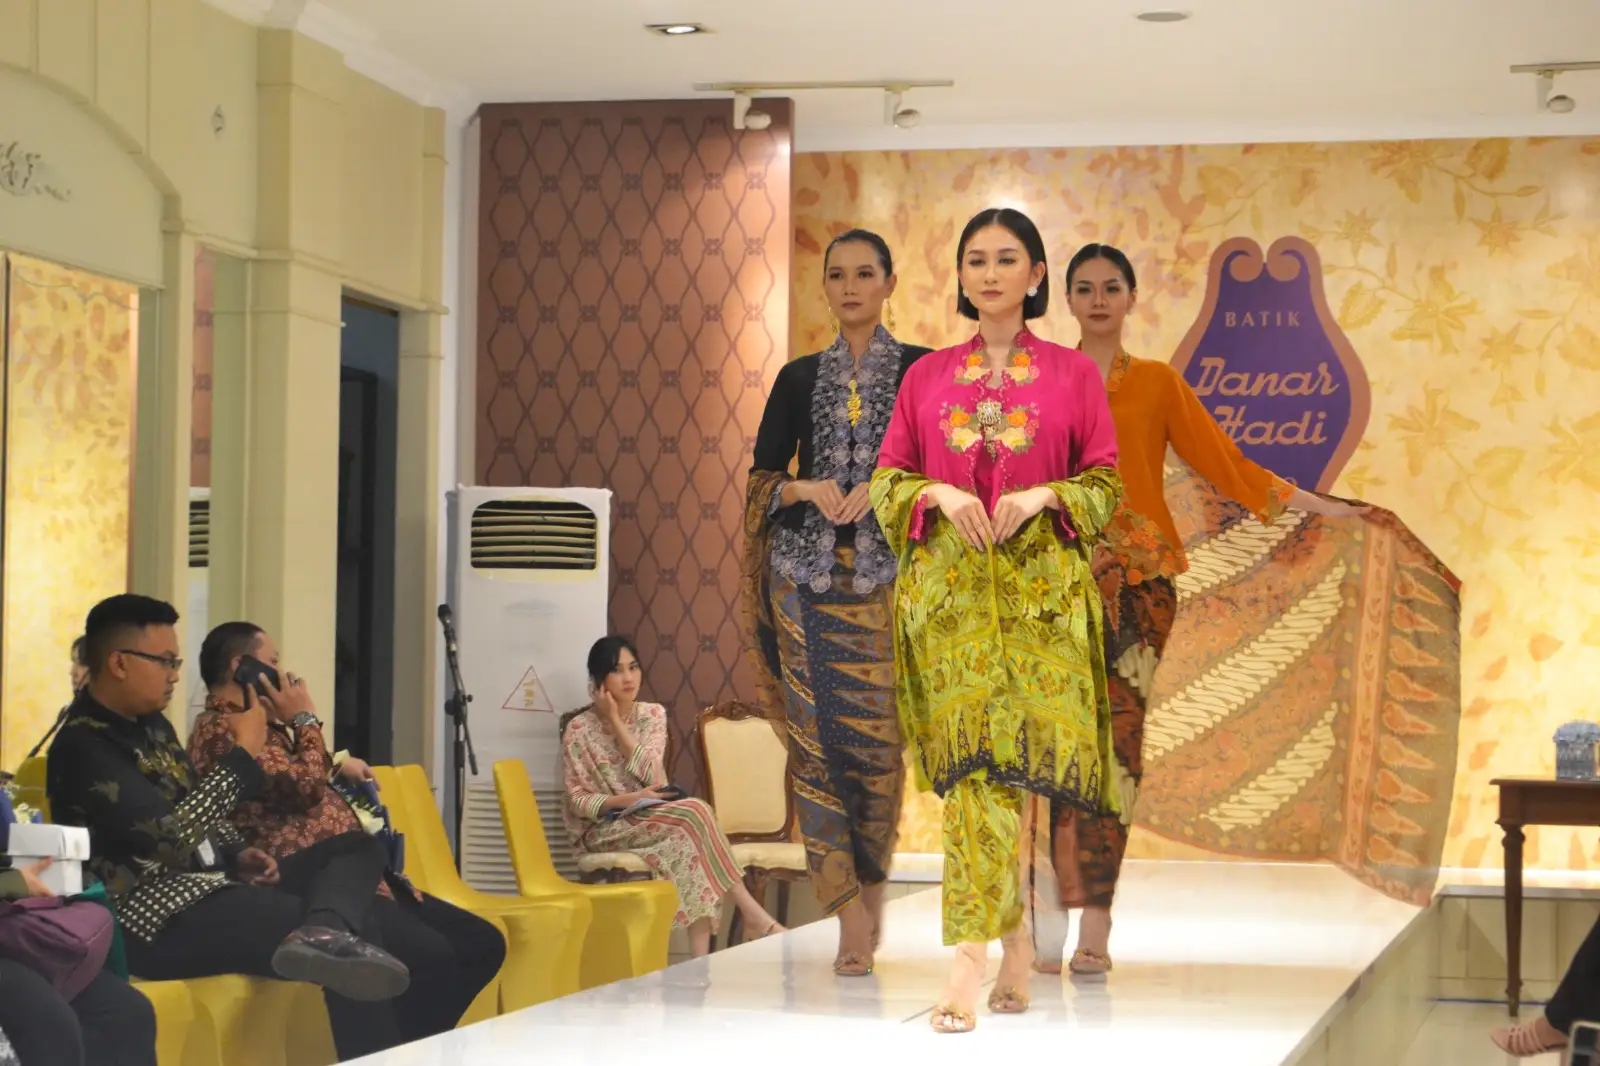 Trunk Show Rukmasara, Batik Danar Hadi Gandeng Desainer Agam Riadi Luncurkan 3 Motif Baru